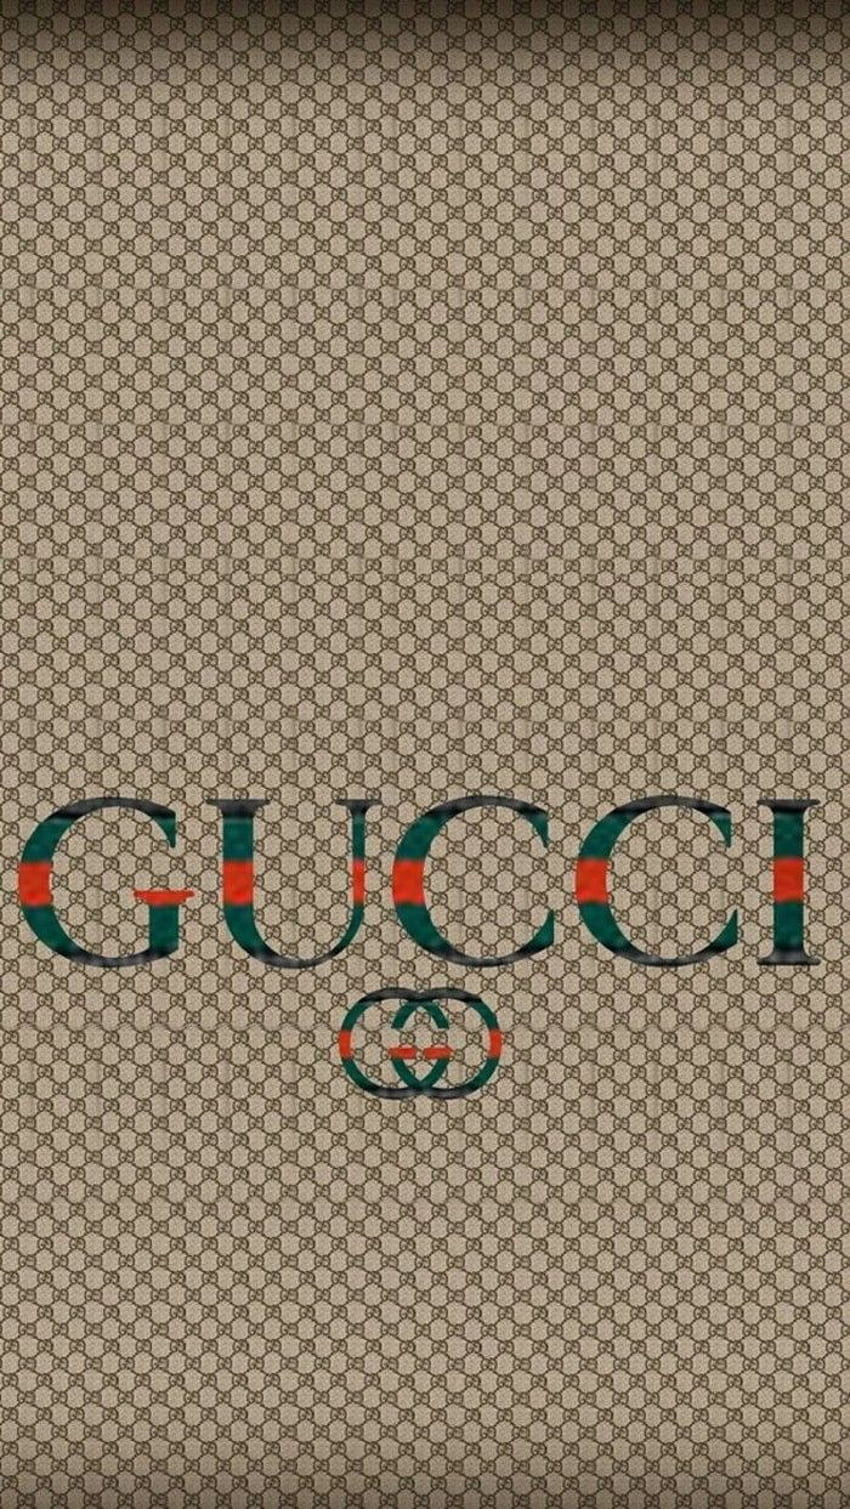 Gucci: Hãy cùng chiêm ngưỡng hình ảnh của thương hiệu thời trang hàng đầu Gucci, với những thiết kế sáng tạo, đầy phá cách và đẳng cấp. Chắc chắn bạn sẽ phải trầm trồ trước sự tinh tế và hoàn hảo của những sản phẩm Gucci.